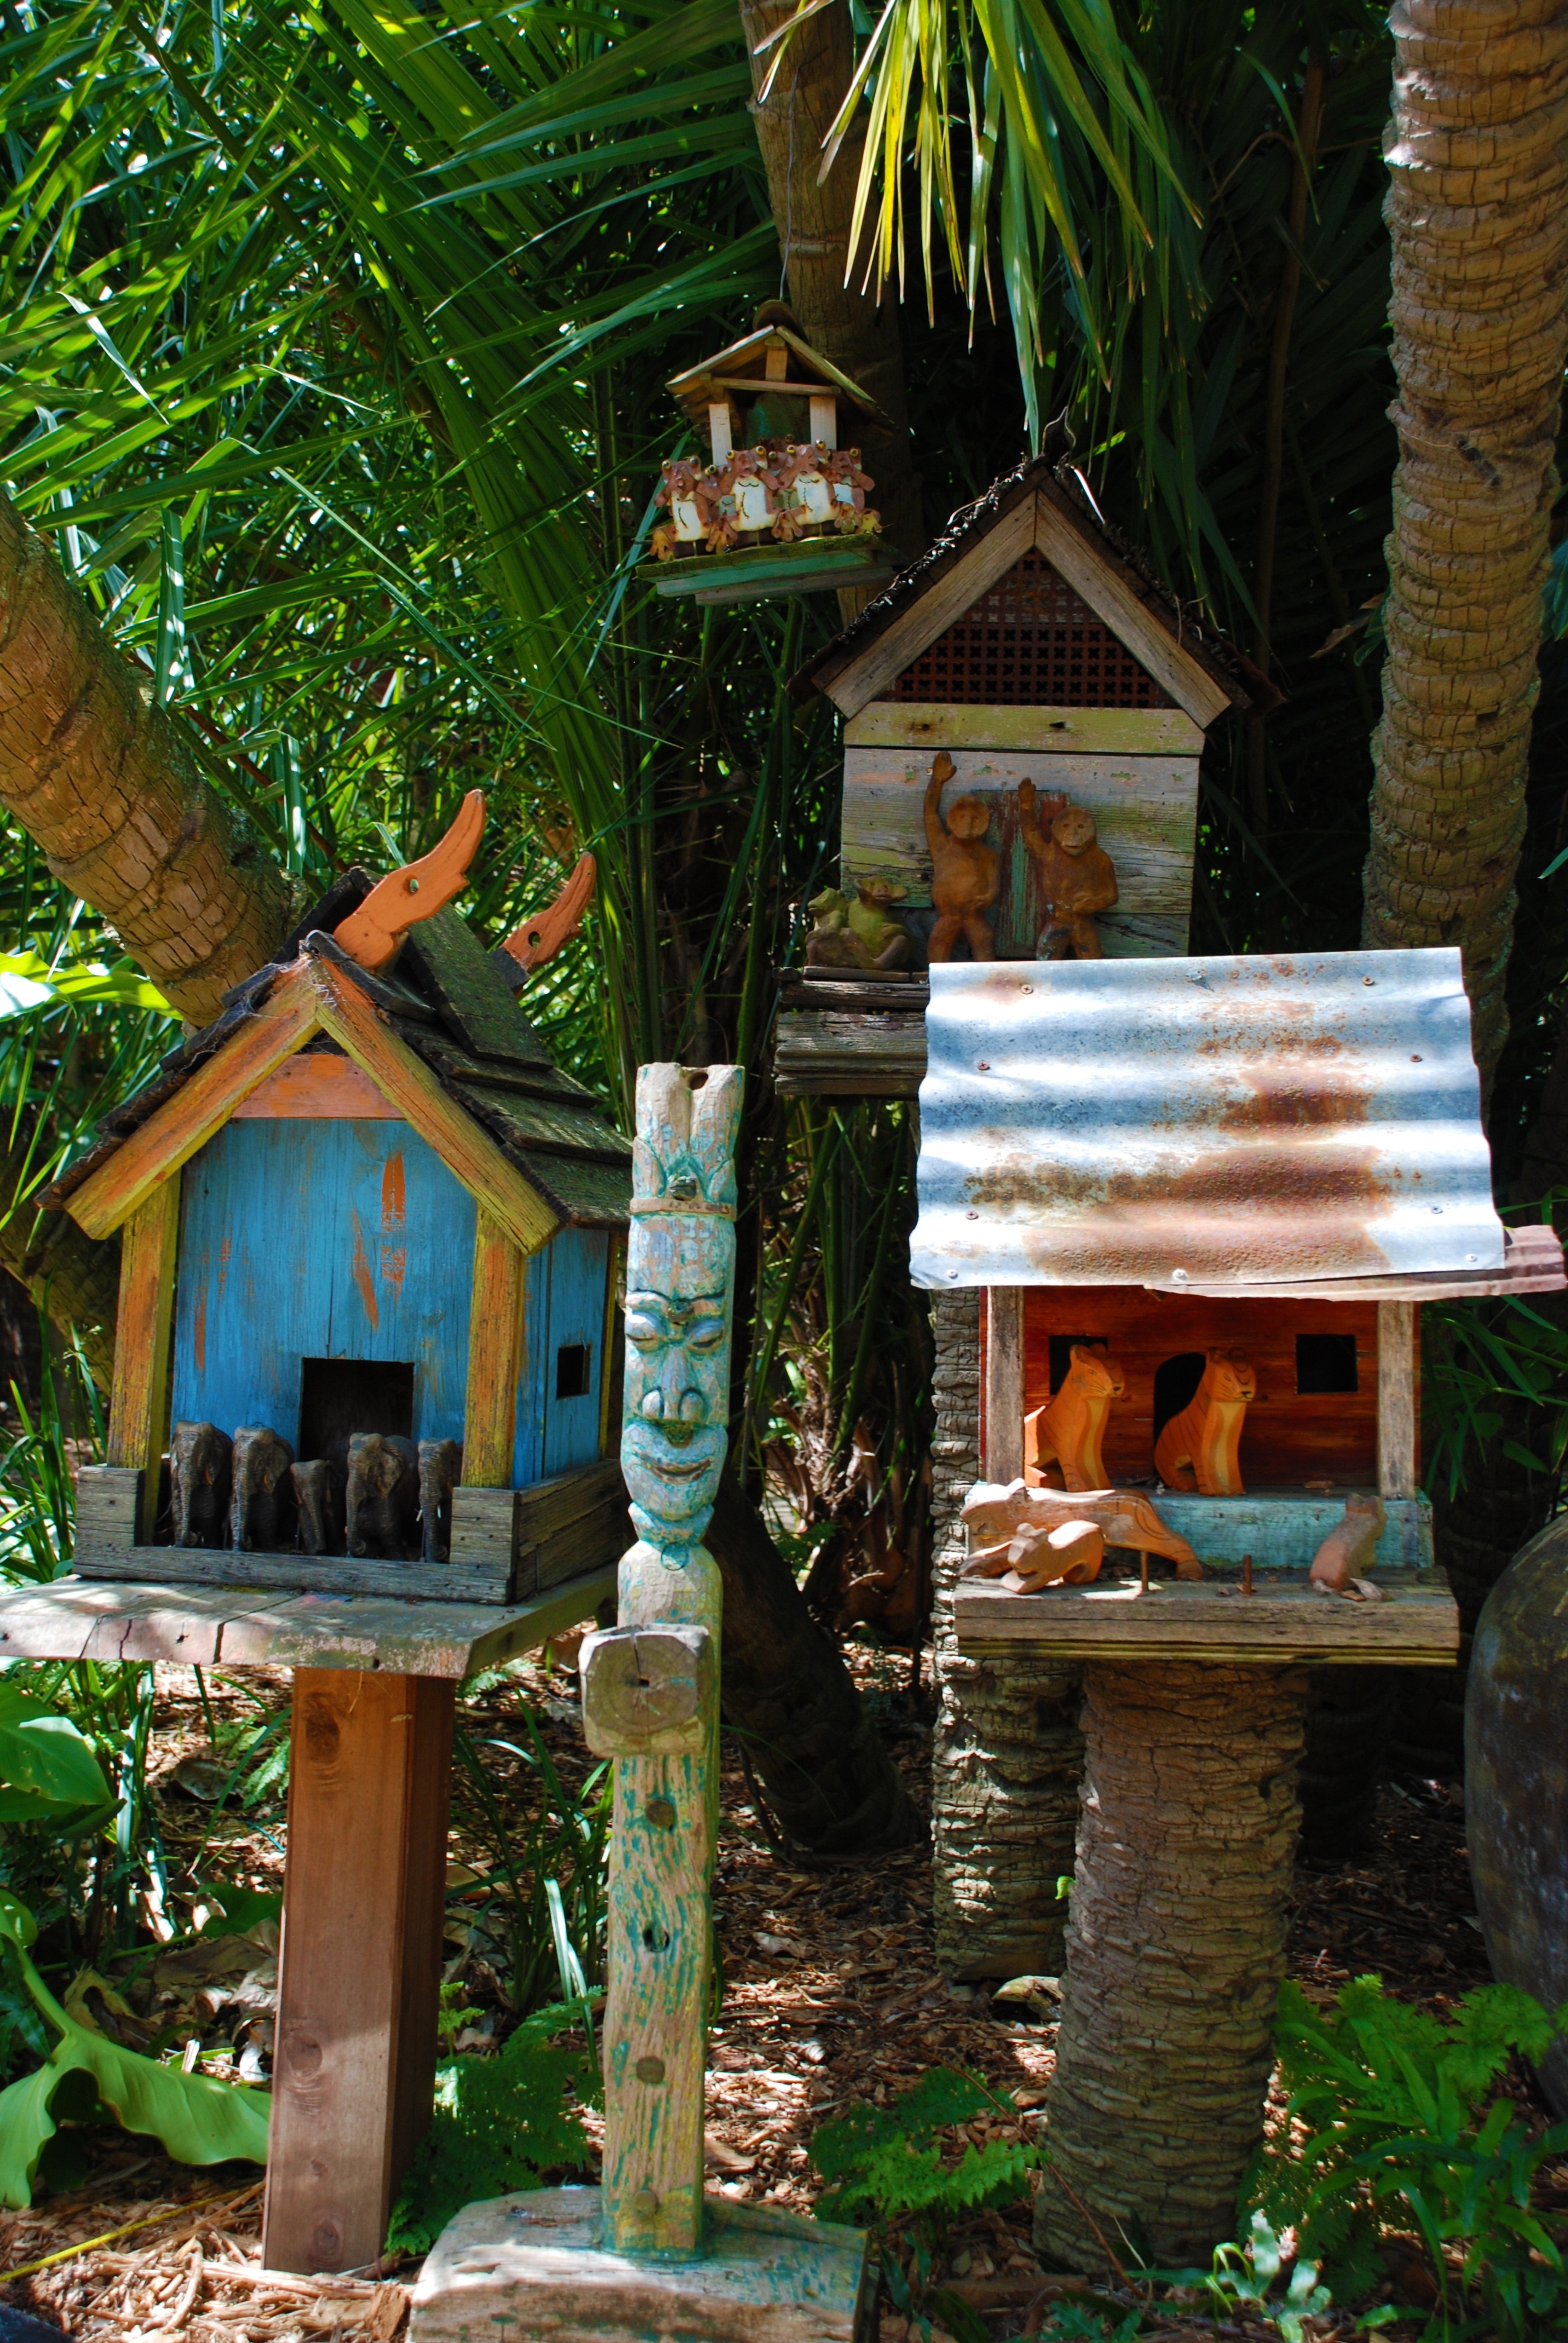 4 wooden birdhouses